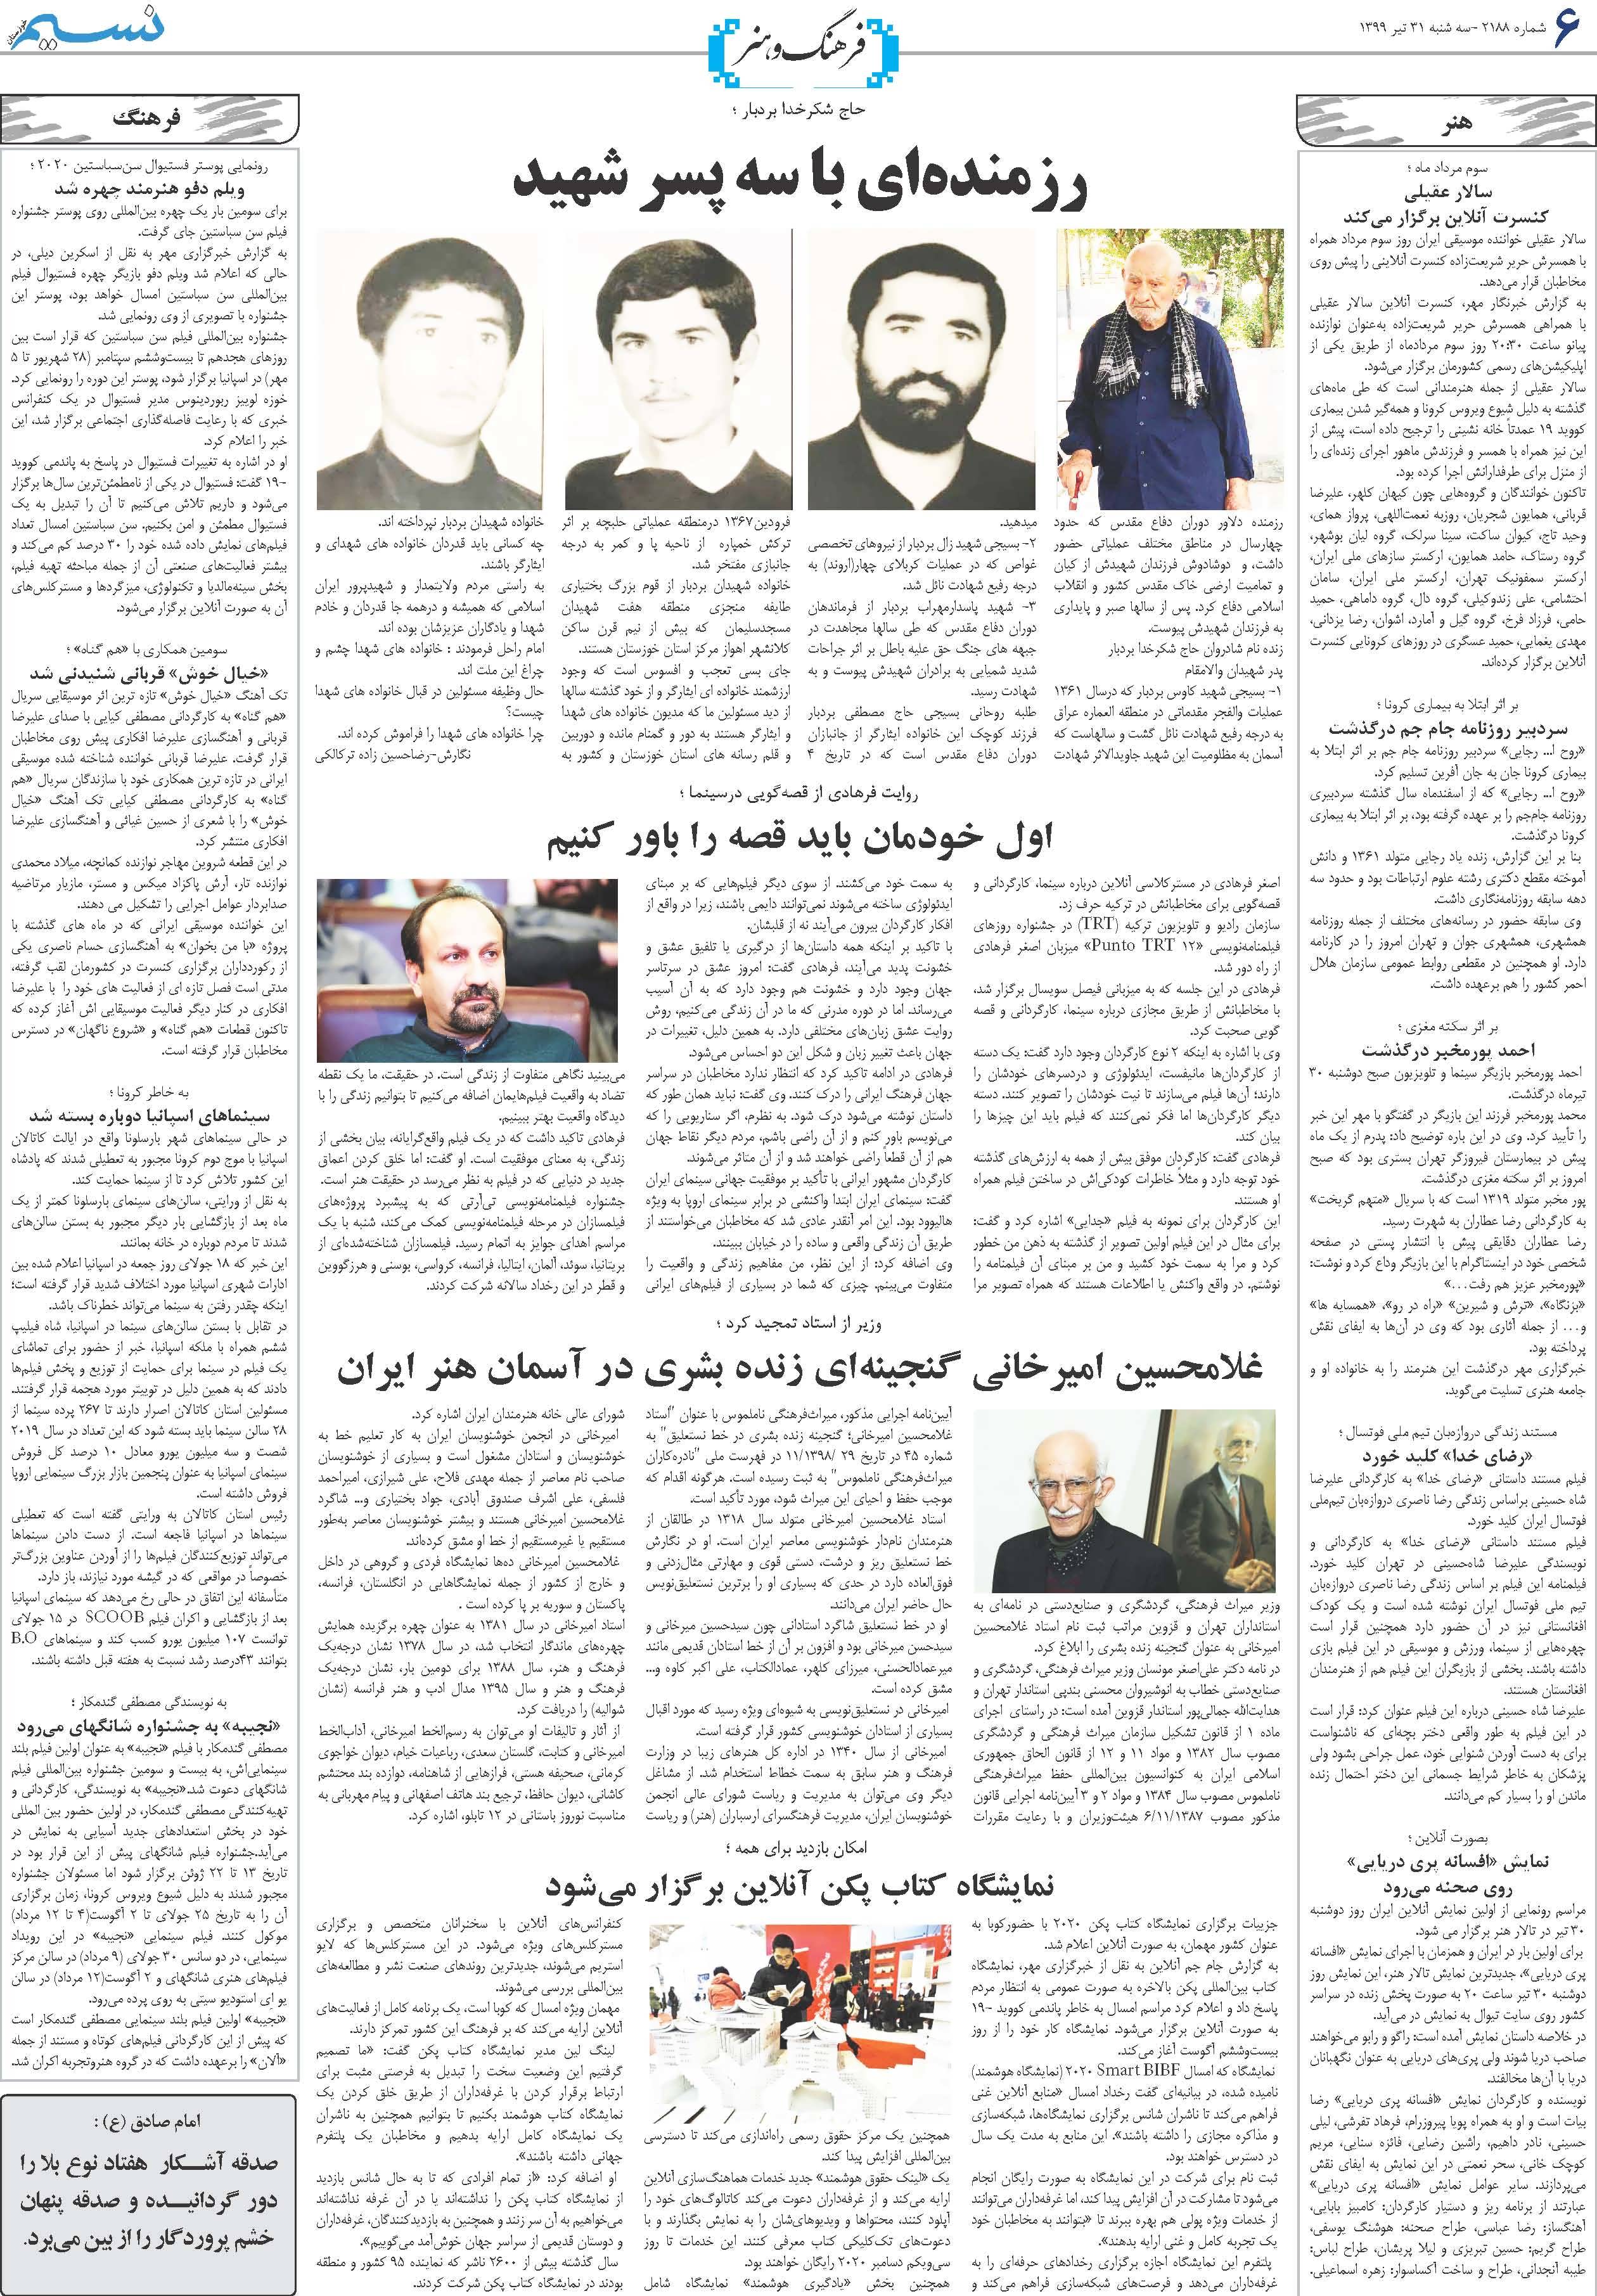 صفحه فرهنگ و هنر روزنامه نسیم شماره 2188